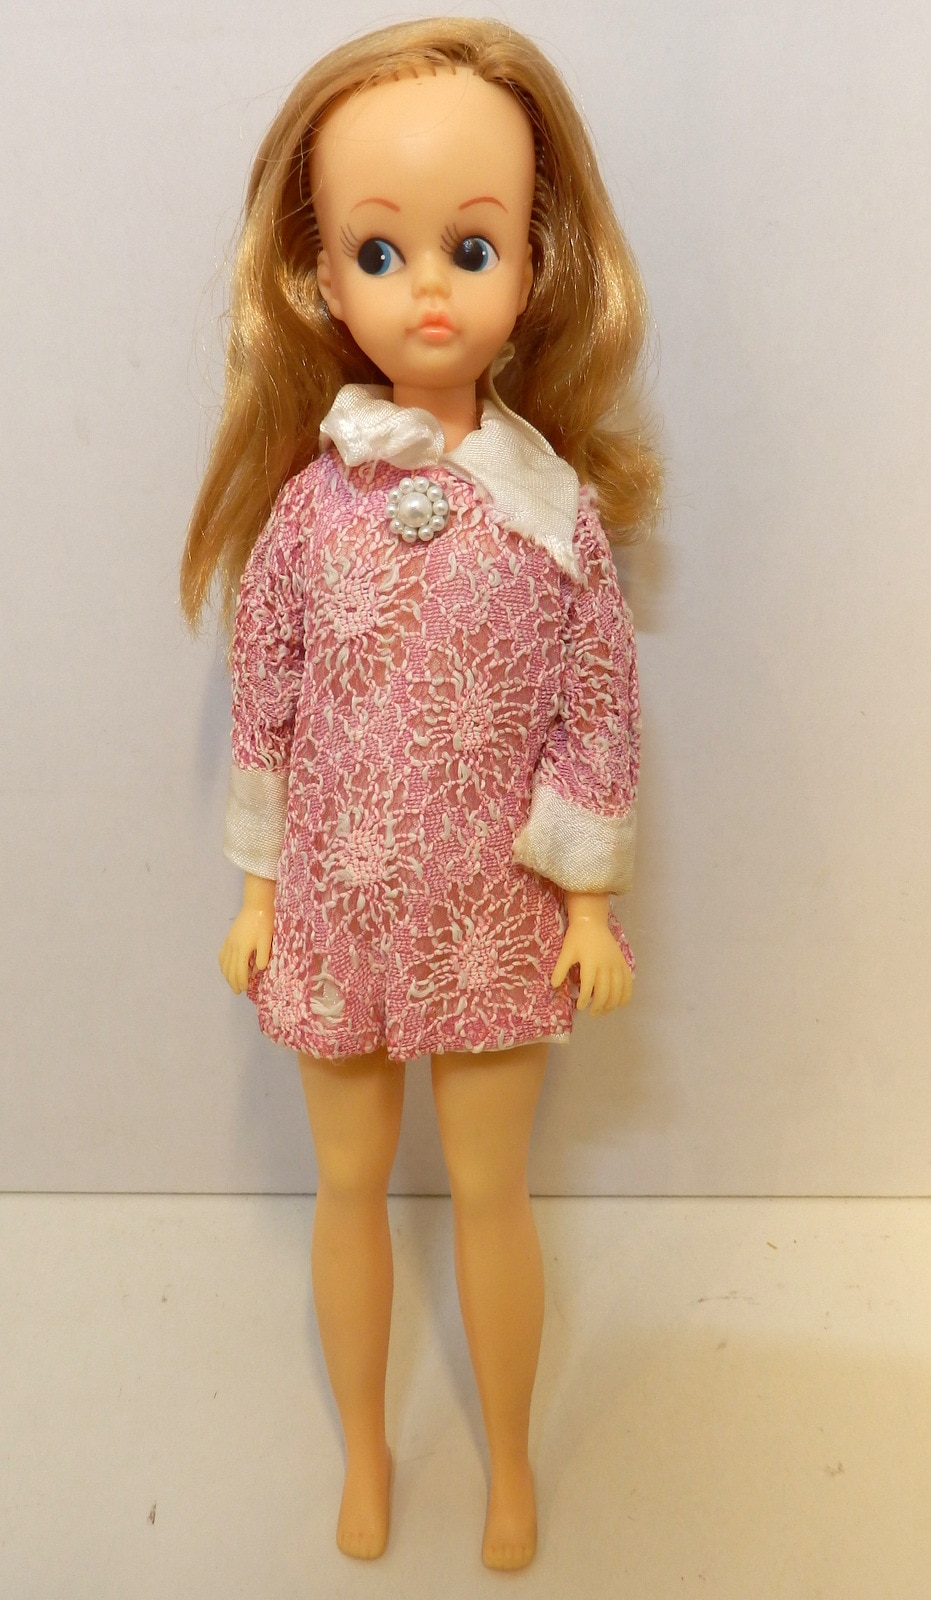 スカーレットちゃん ロングヘア - おもちゃ/人形